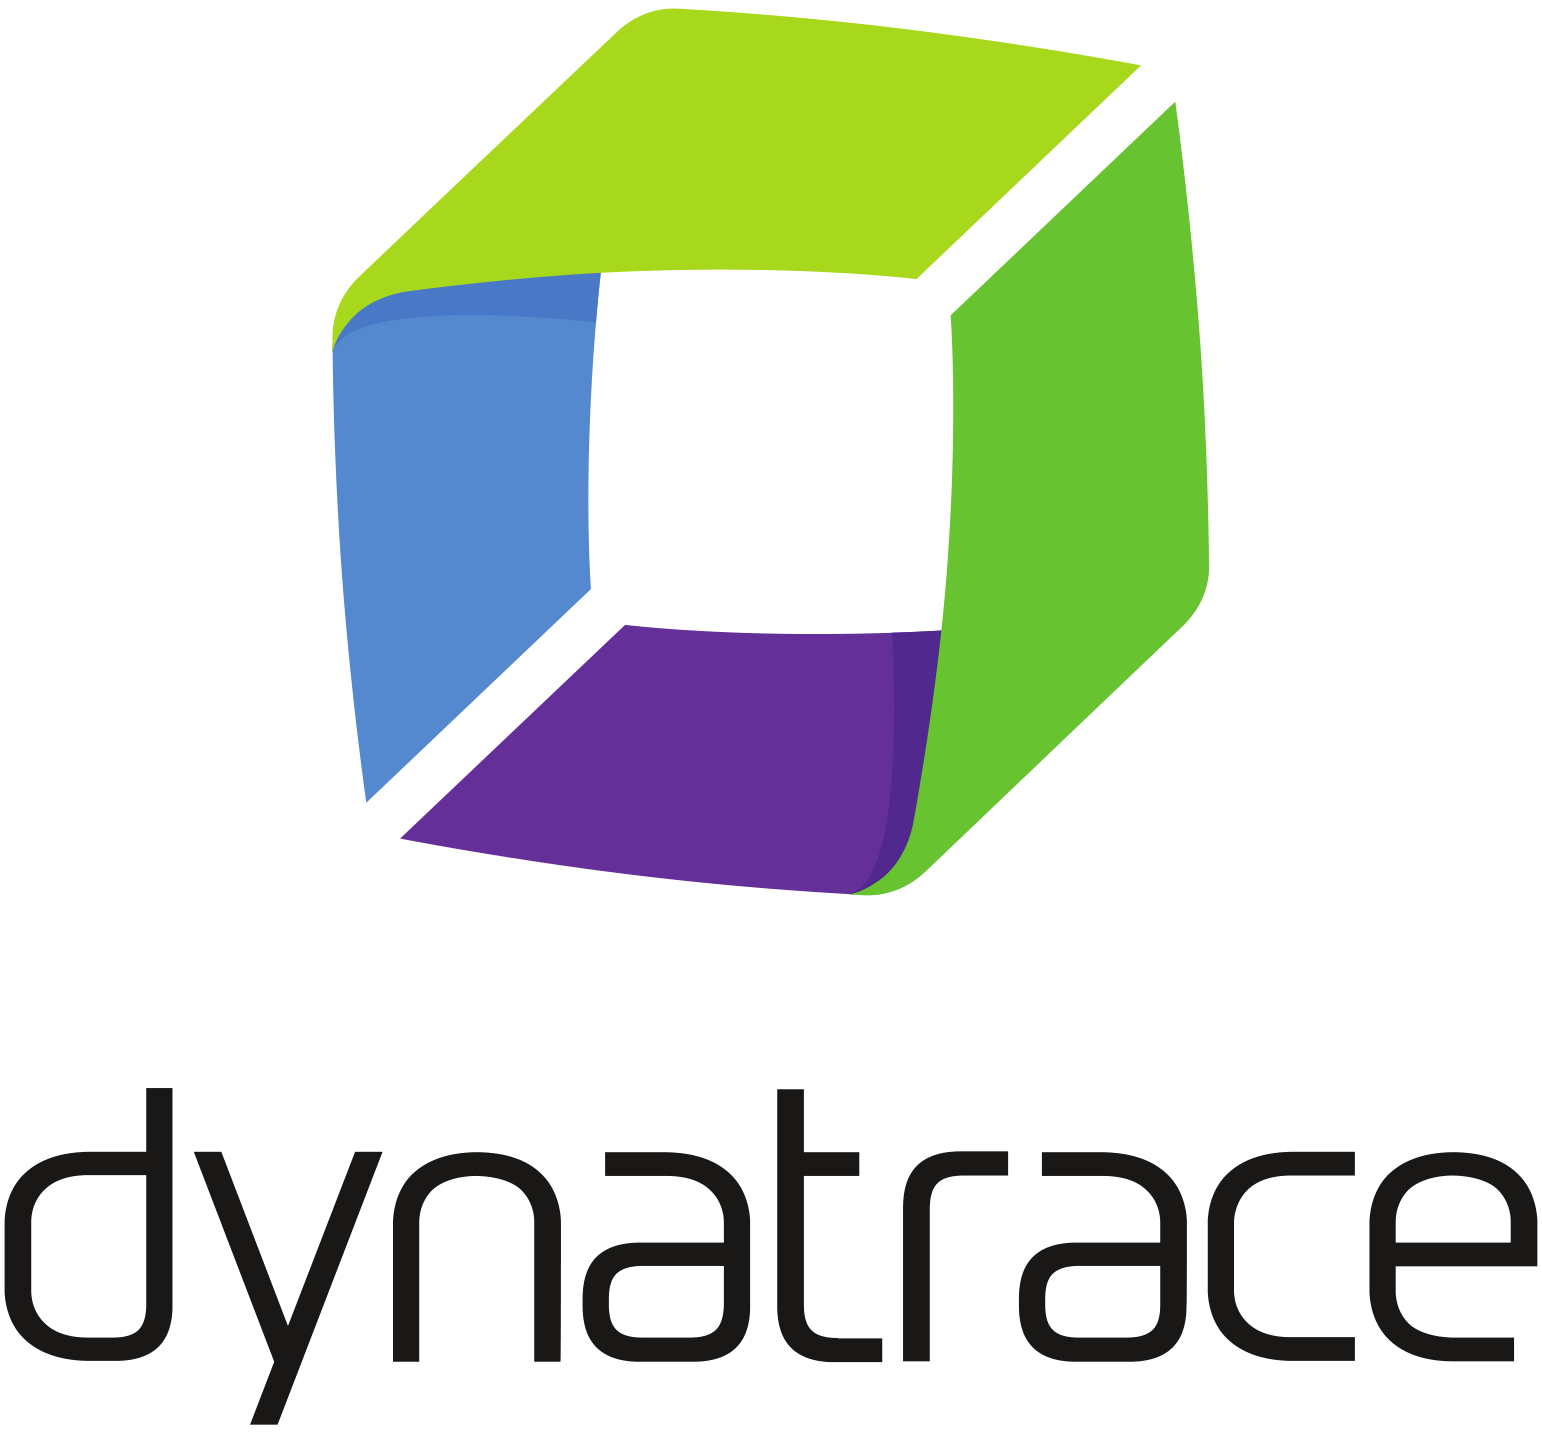 Sponsor logo - Dynatrace, blue, green, purple